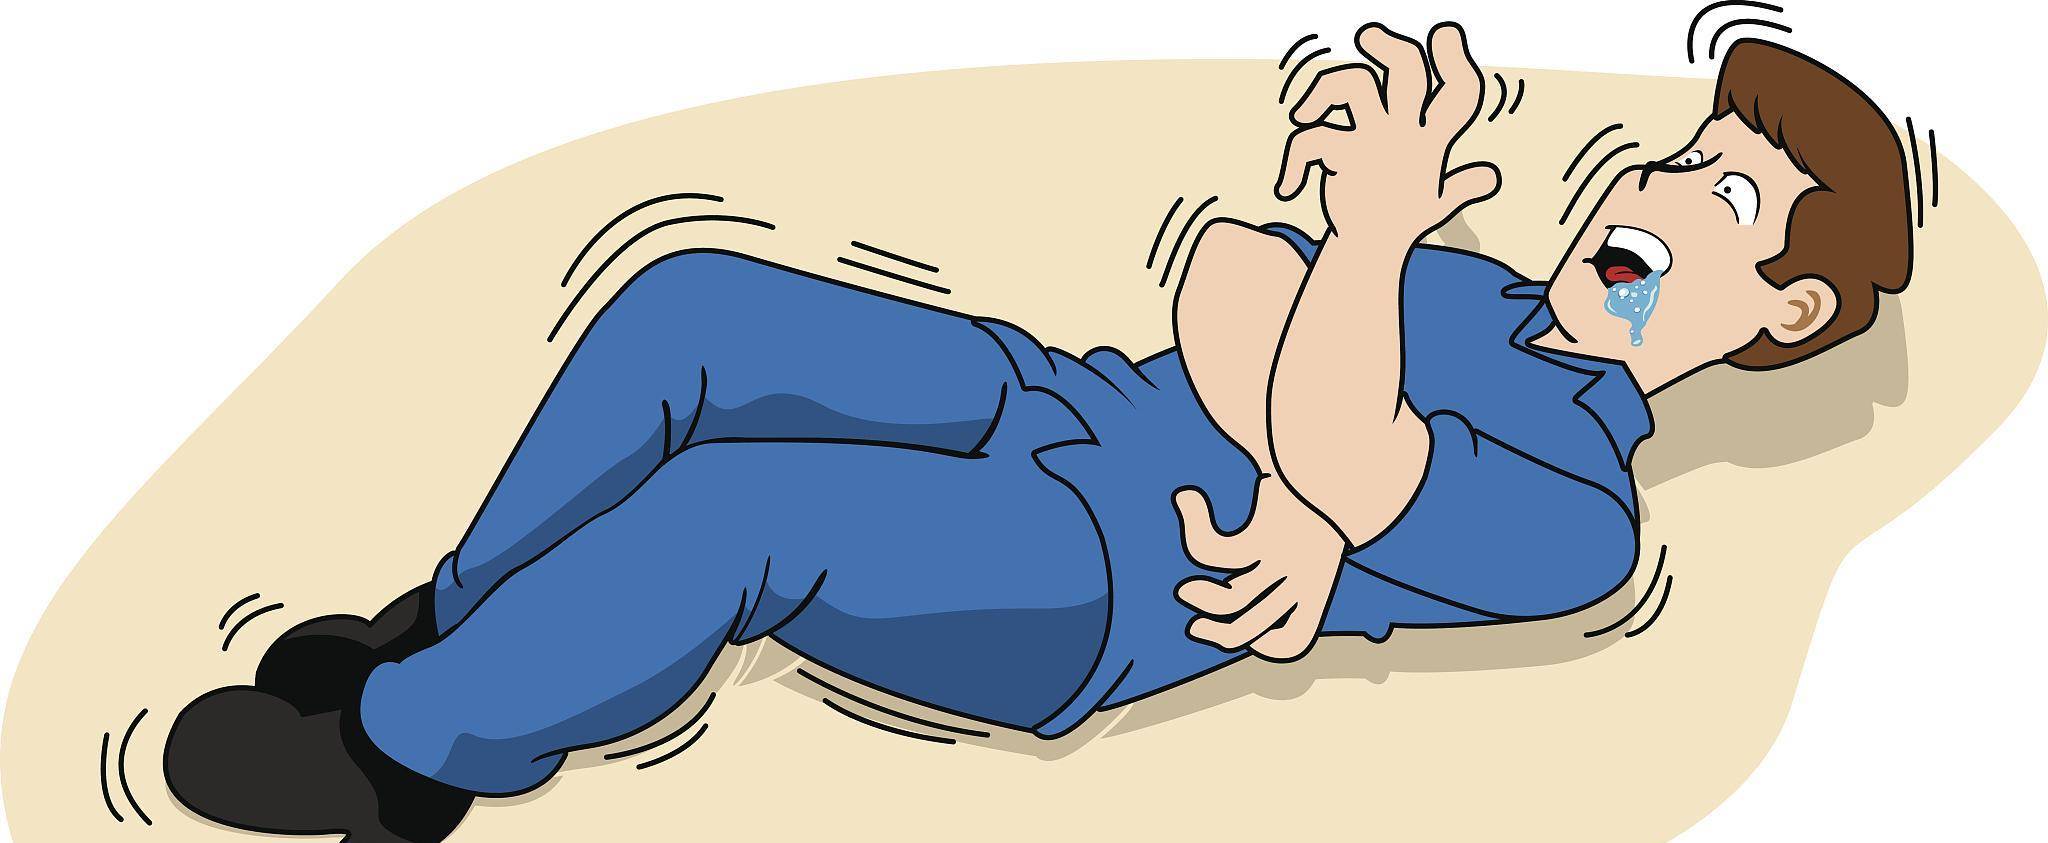 这种现象被称为睡眠抽搐,也称为肌肉抽搐或肌肉震颤,通常发生在